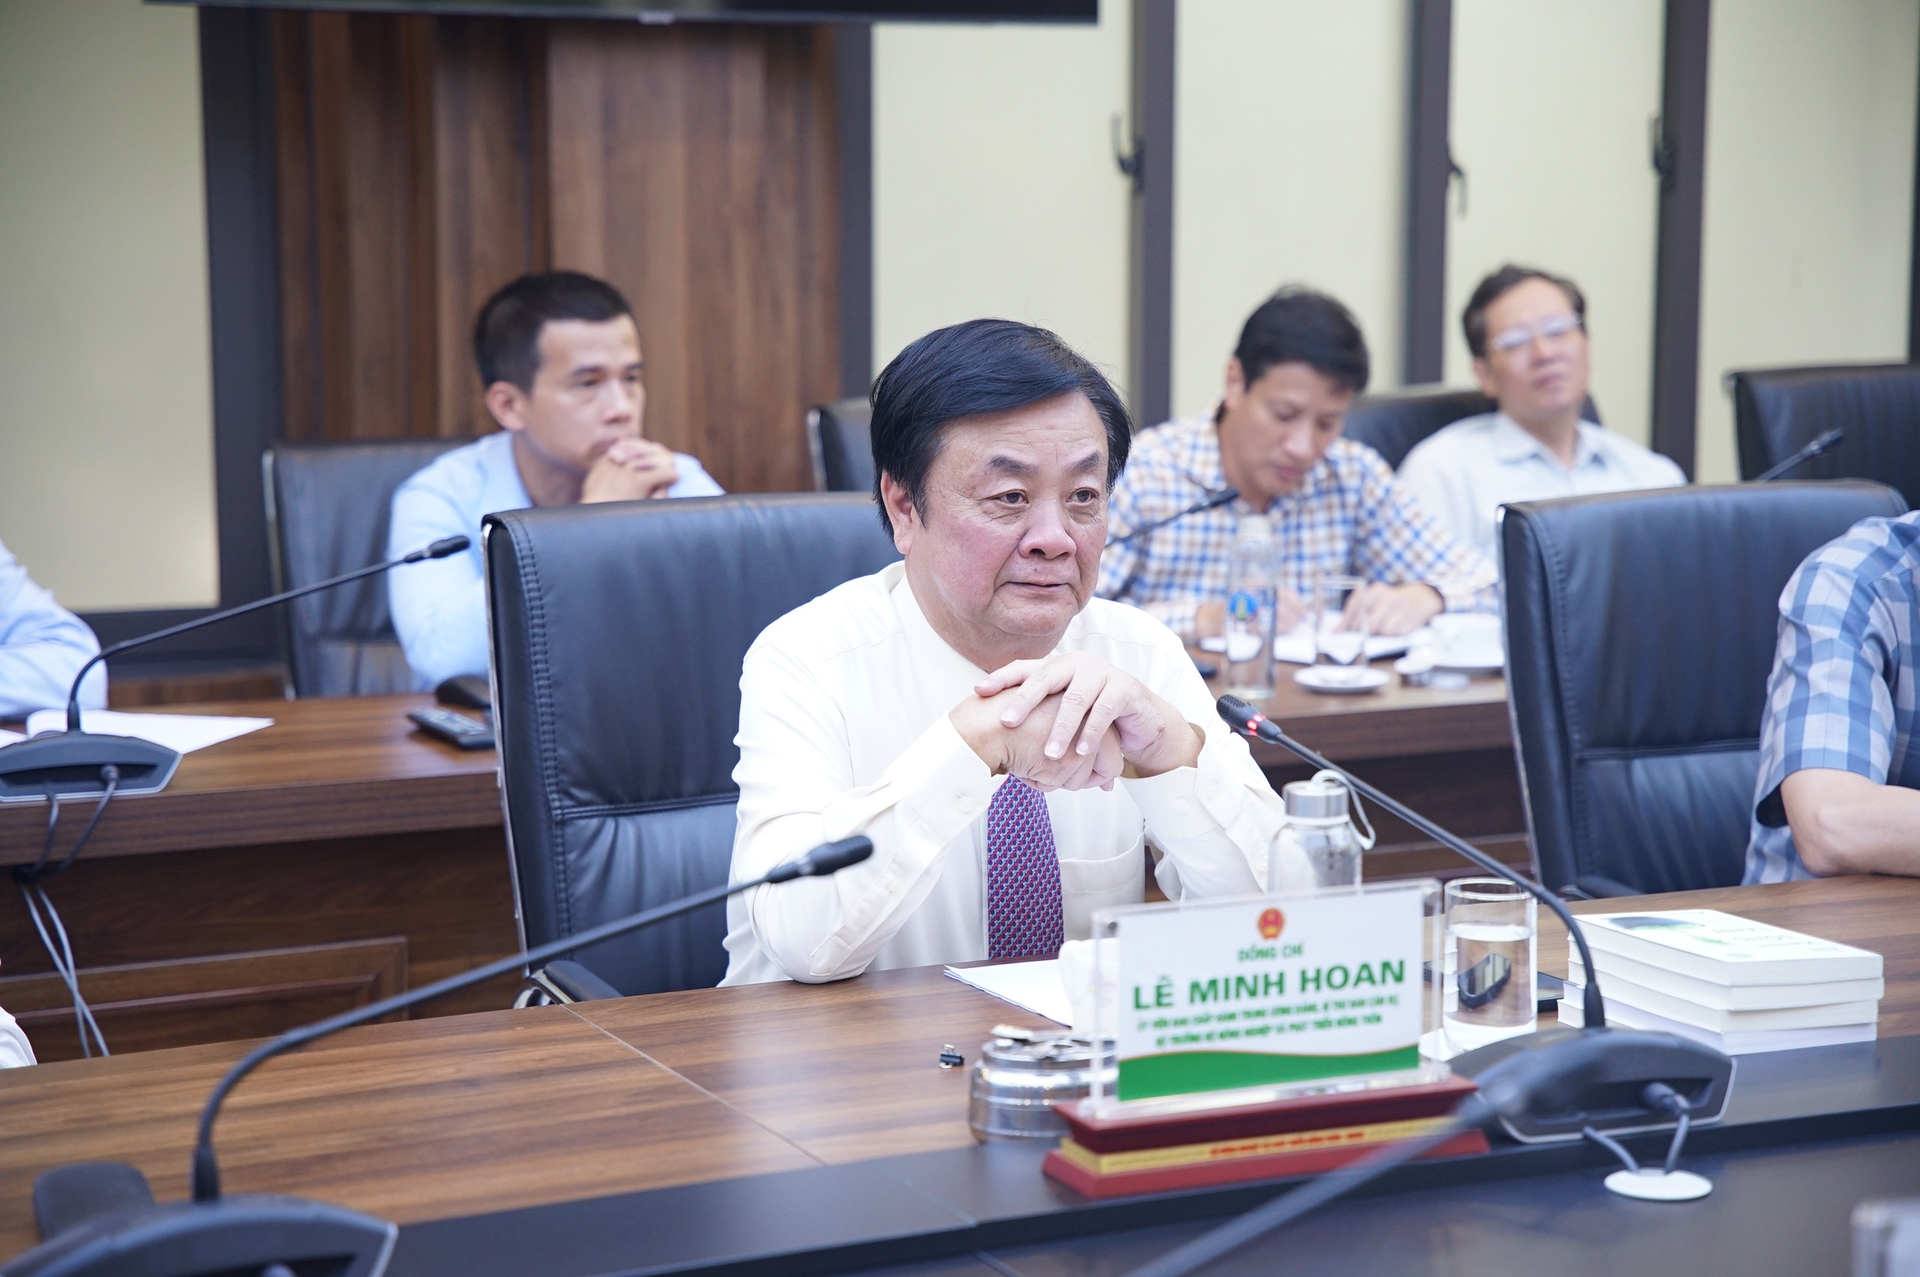 Bộ trưởng Lê Minh Hoan đánh giá cao sự đóng góp của người cao tuổi trong công cuộc xây dựng nông thôn mới và phát triển nông nghiệp nói chung. Ảnh: Linh Linh. 